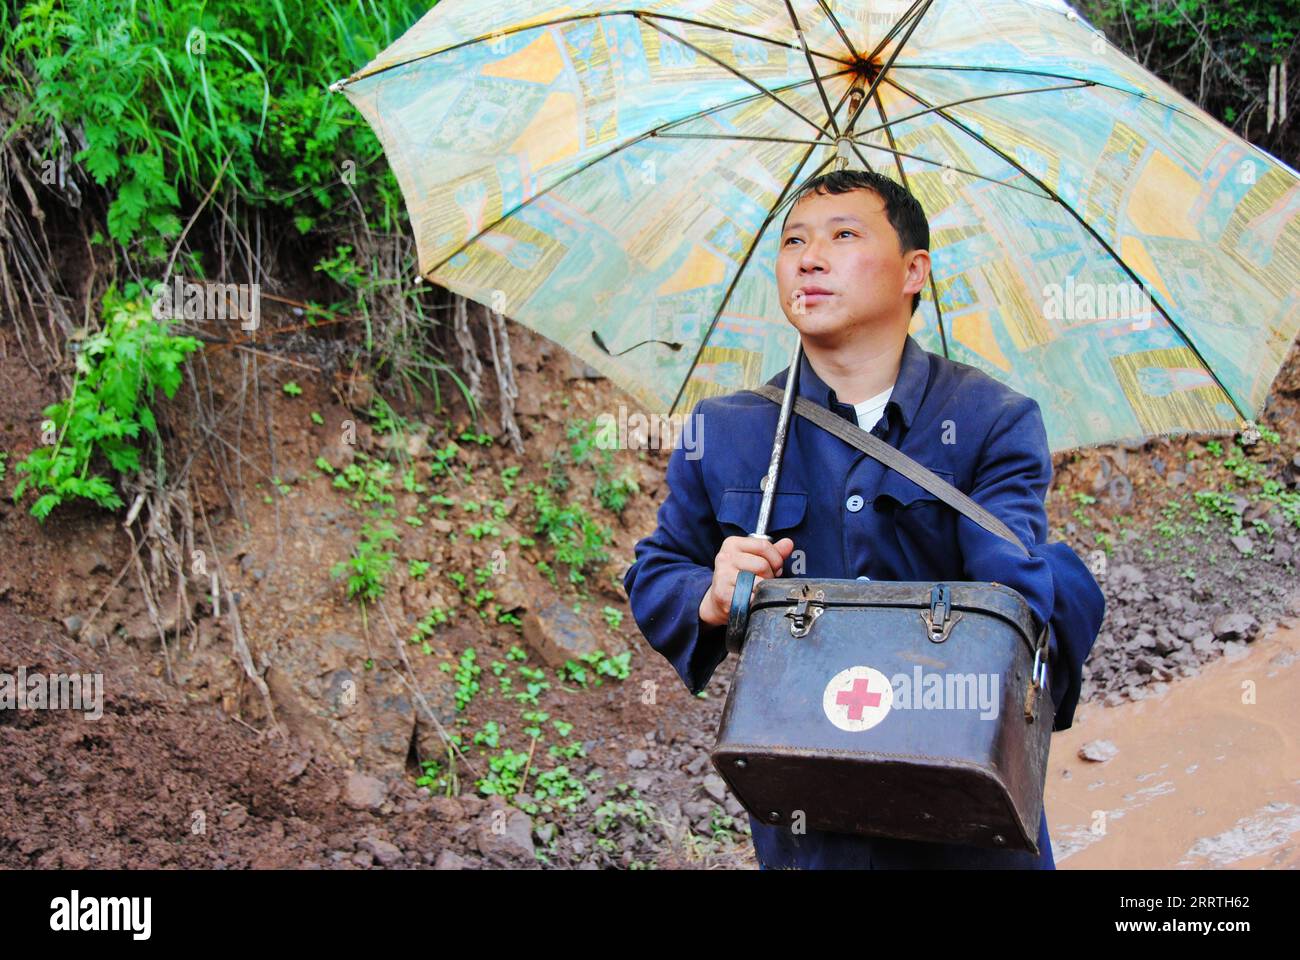 230726 -- GUIYANG, 26. Juli 2023 -- dieses Foto vom 4. Juli 2012 zeigt Zhu Daqing auf einer matschigen Straße auf dem Weg zu einem Patienten im Dorf Xinshui, Mazha Stadt im autonomen Bezirk Yi-Hui-Miao von Weining, Provinz Guizhou im Südwesten Chinas. Zhu Daqing ist ein Landarzt im Dorf Xinshui, Mazha, im autonomen County Yi-Hui-Miao von Weining. Zhu Daqing wurde in einer Familie mit Generationen von Ärzten geboren und war in jungen Jahren entschlossen, Arzt wie sein Vater zu werden, obwohl er aufgrund angeborener Abwesenheit der oberen Extremität im linken Unterarm behindert ist. Studium der traditionellen chinesischen Medizin, ZH Stockfoto